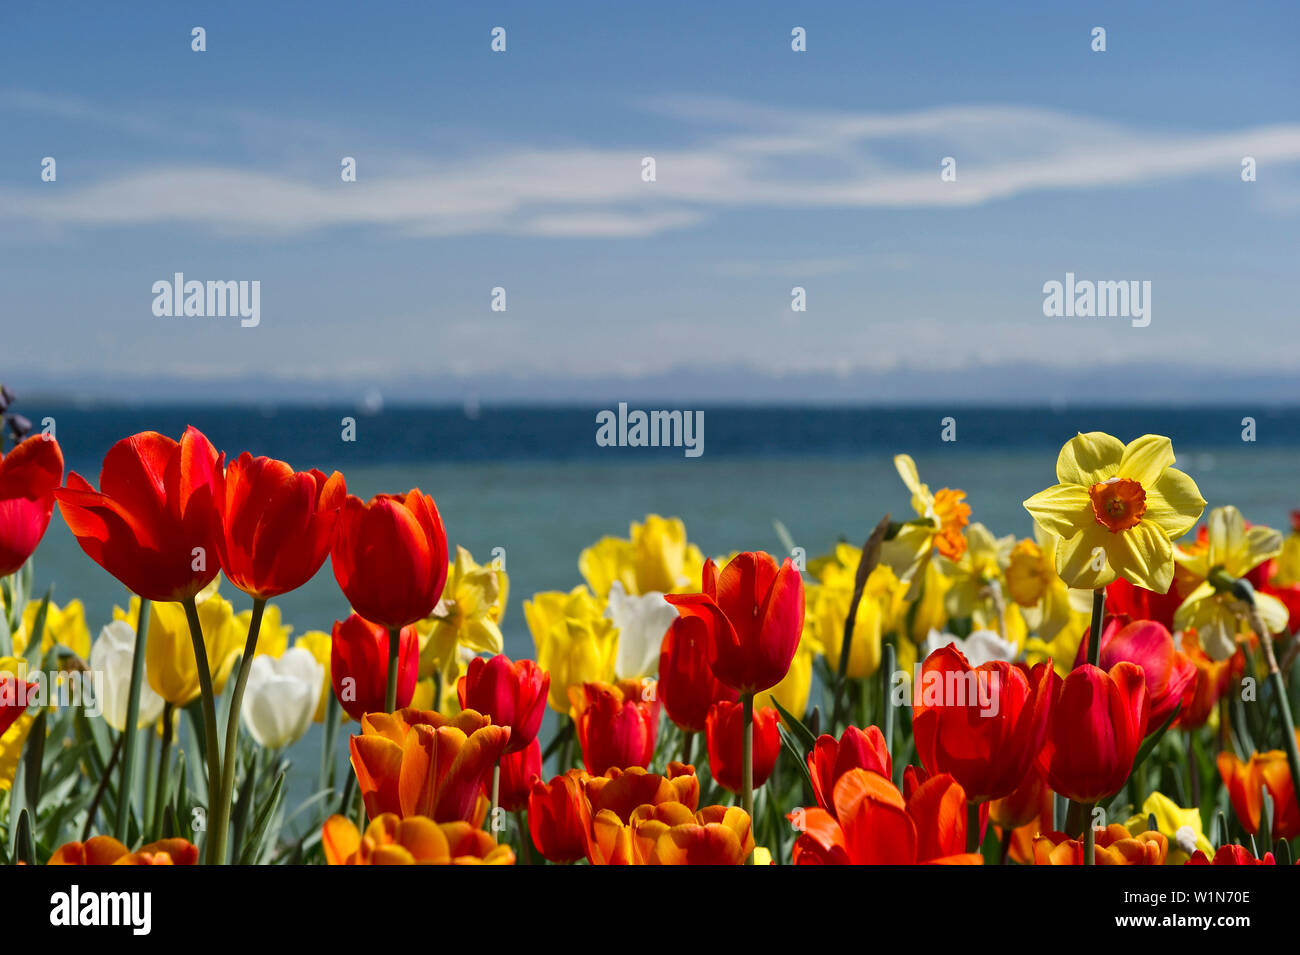 Blumenwiese mit Tulpen, den Bodensee und die Alpen im Hintergrund, Insel Mainau, Bodensee, Baden-Württemberg, Deutschland, Europa Stockfoto